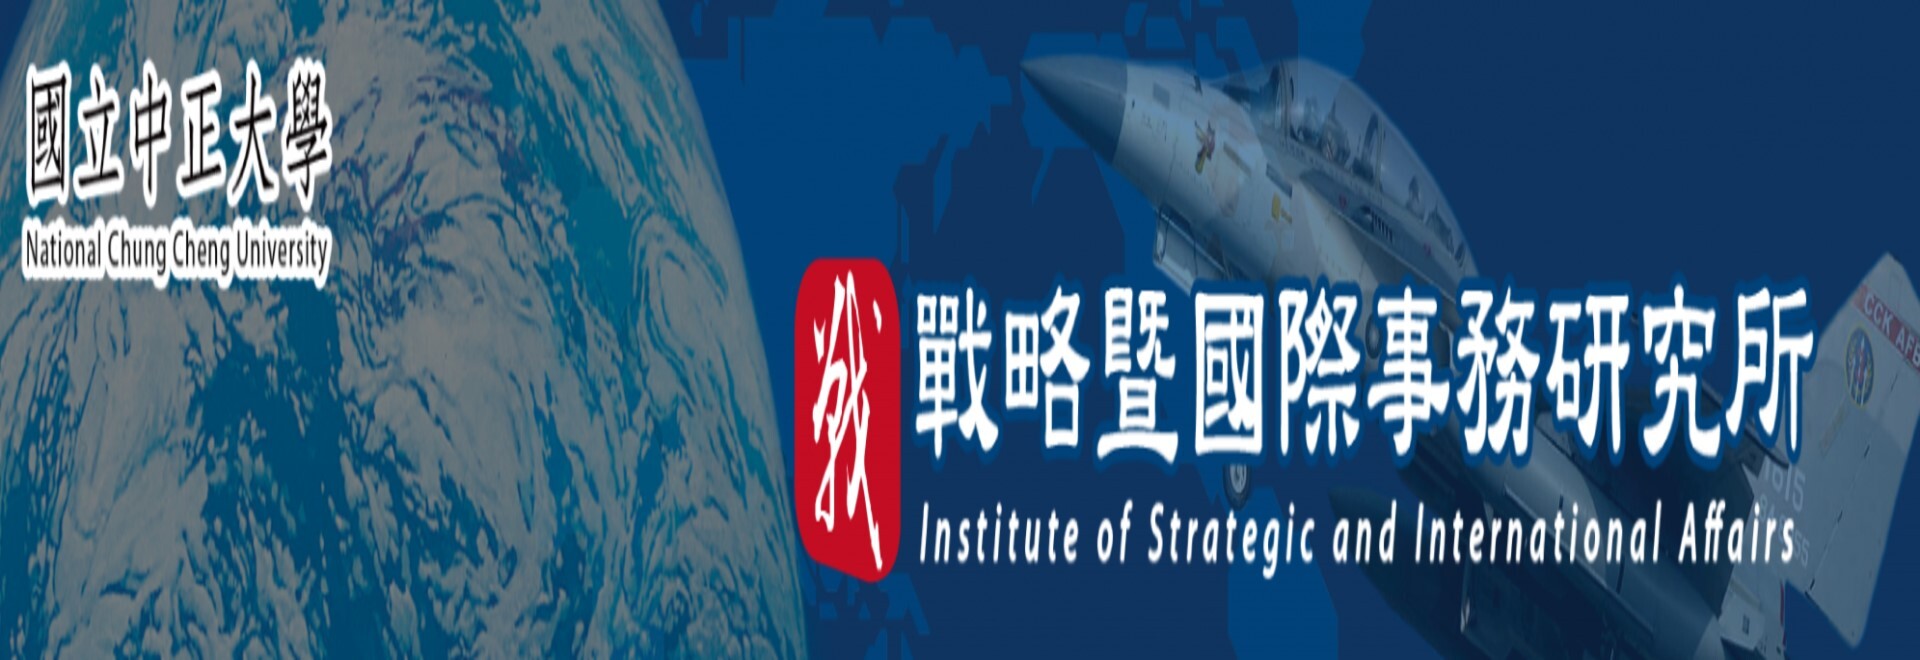 戰略暨國際事務研究所 Institute of Strategic and International Affairs Studies